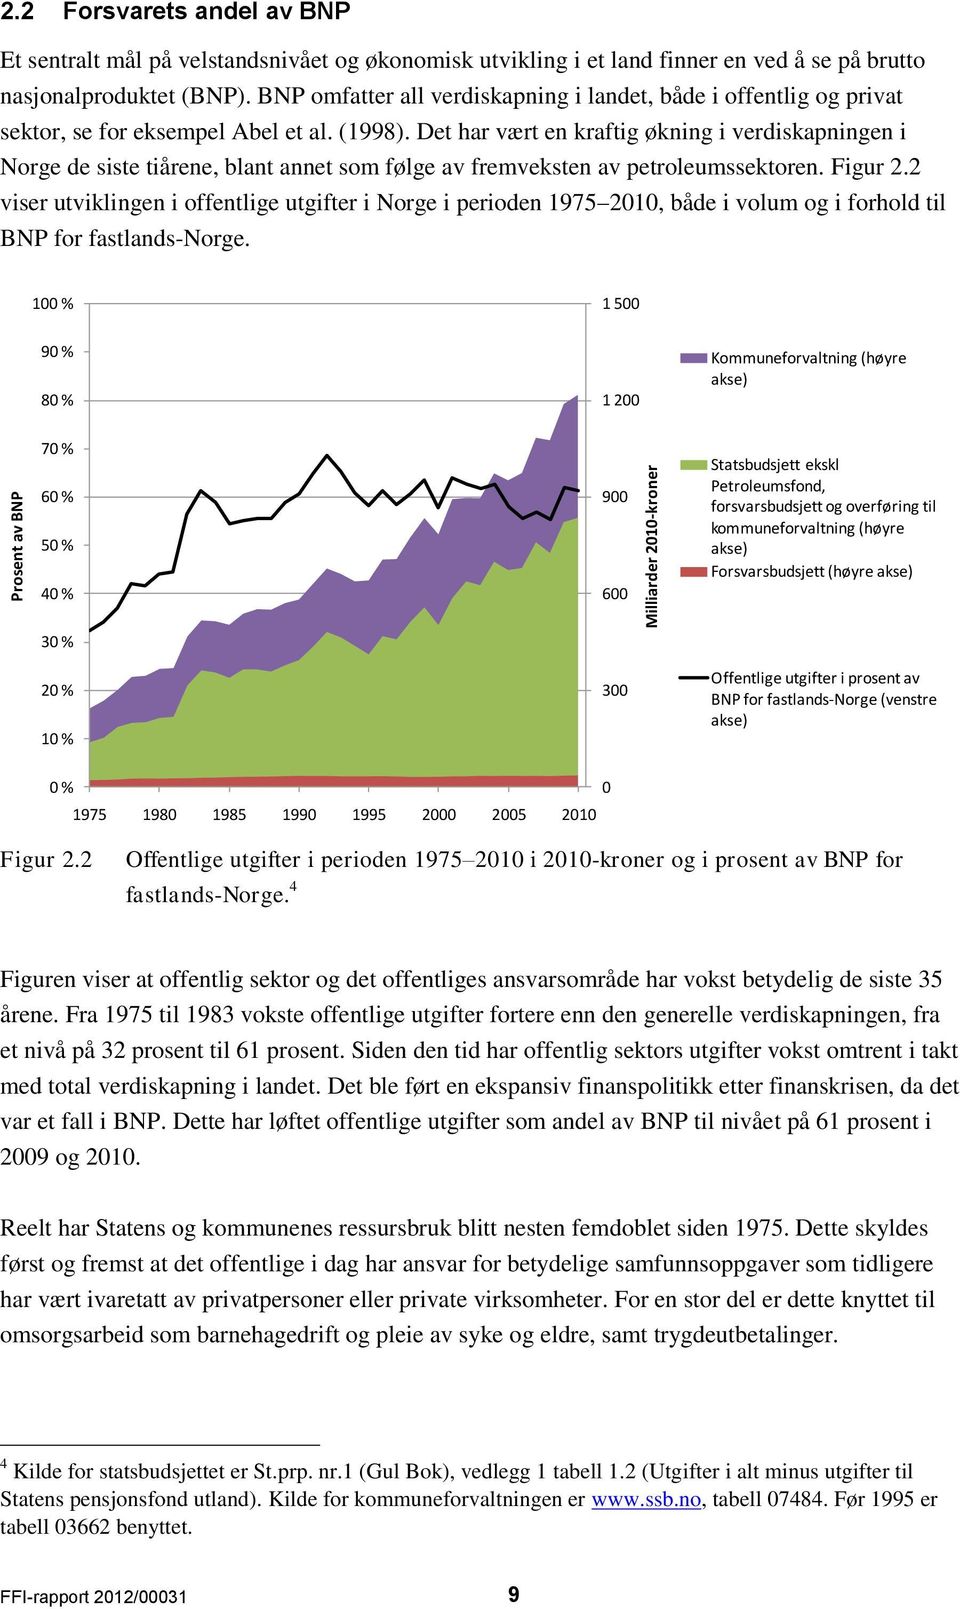 Det har vært en kraftig økning i verdiskapningen i Norge de siste tiårene, blant annet som følge av fremveksten av petroleumssektoren. Figur 2.